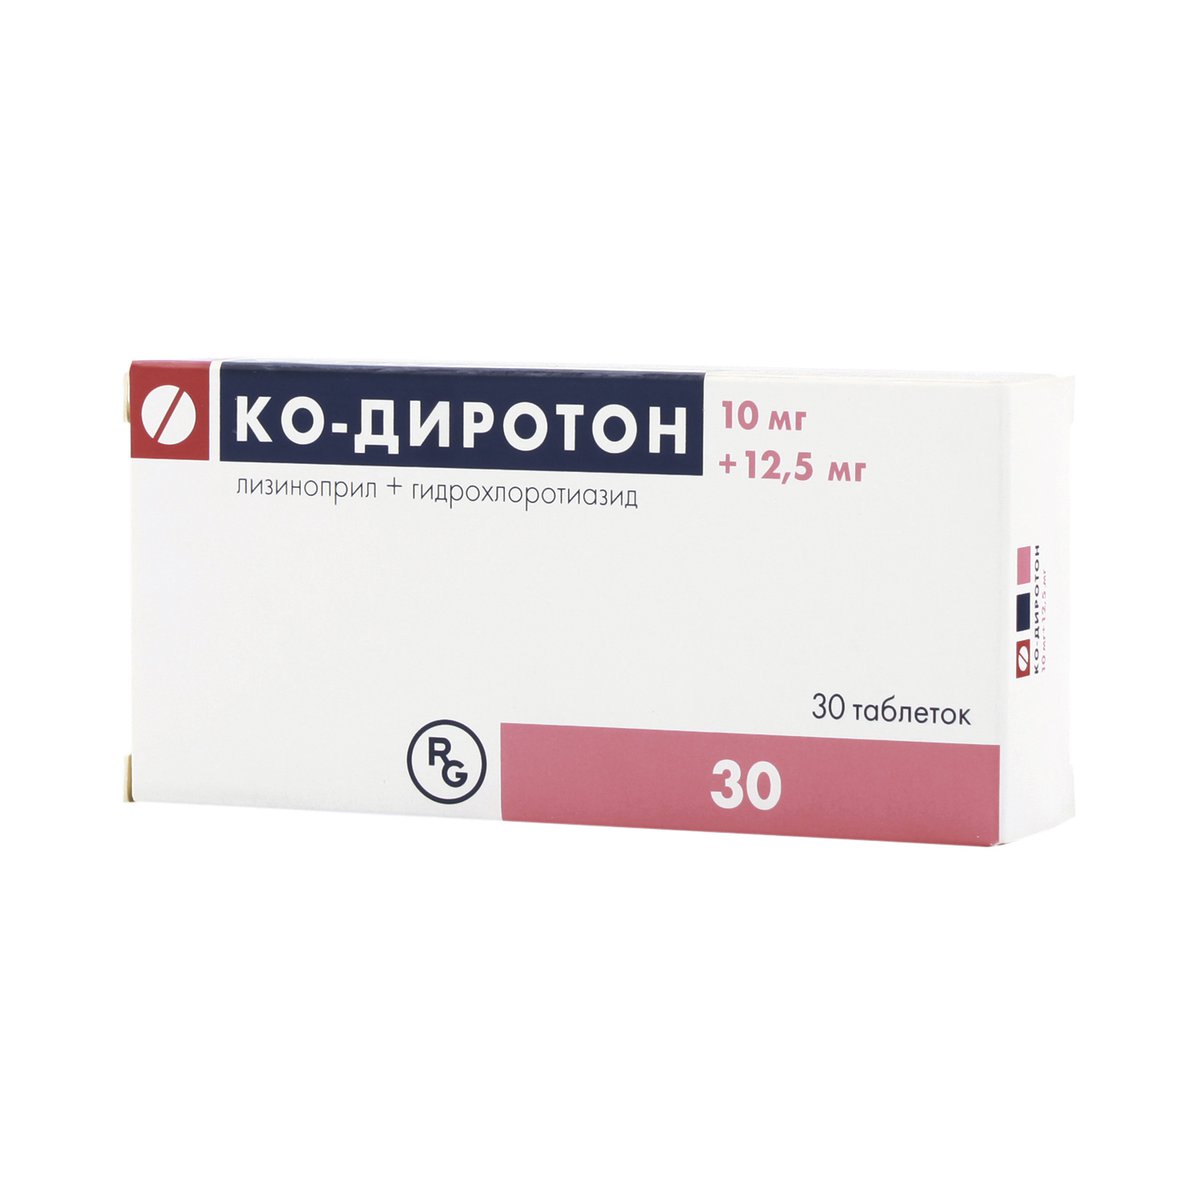 Ко-диротон (таблетки, 30 шт, 10 + 12,5 мг + мг) - цена,  онлайн в .